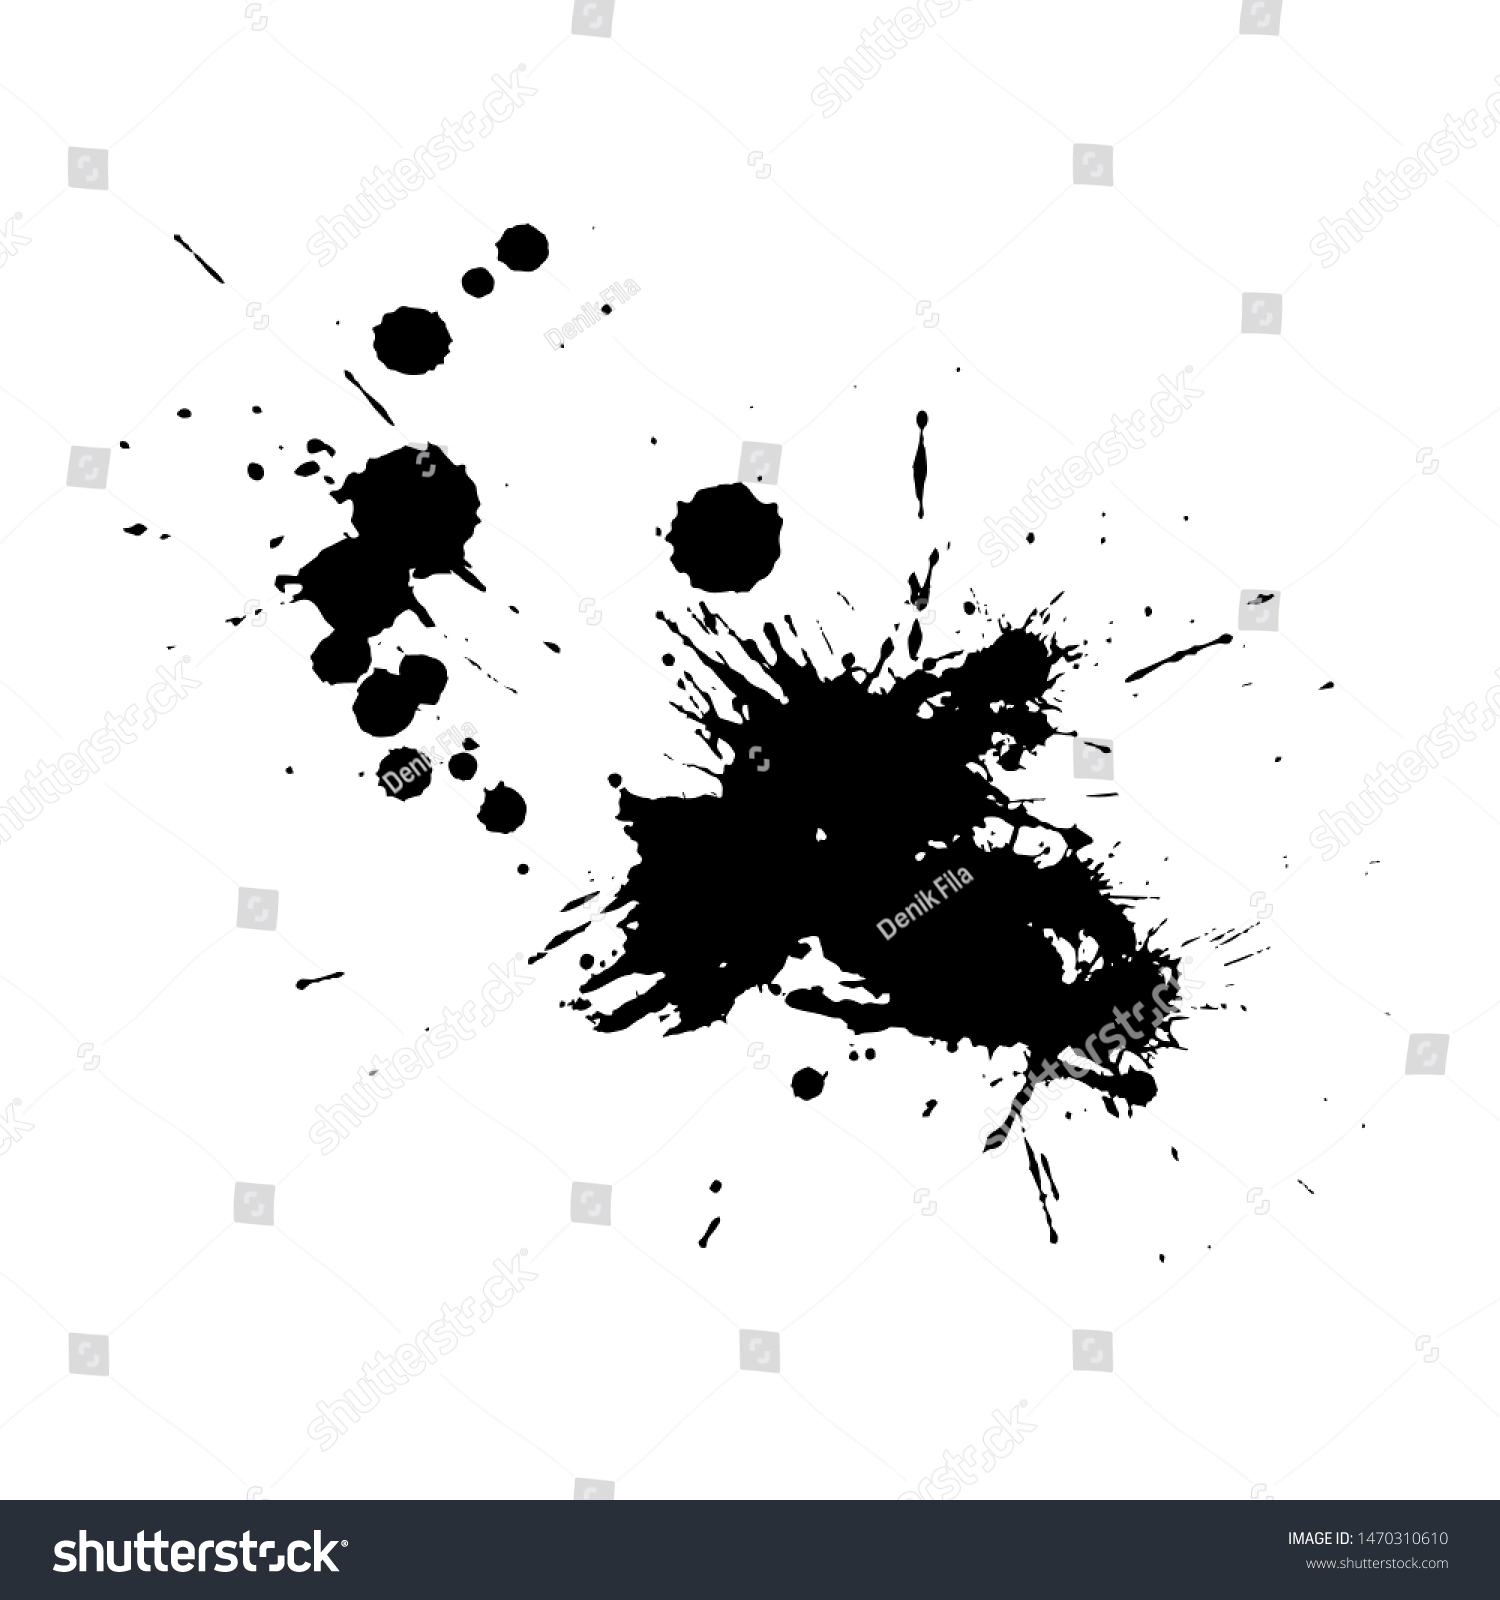 SVG of Ink Splattered Vector Art for Cover, Poster, Flyer, Brochure, Banner, Background or Wallpaper Design Download svg